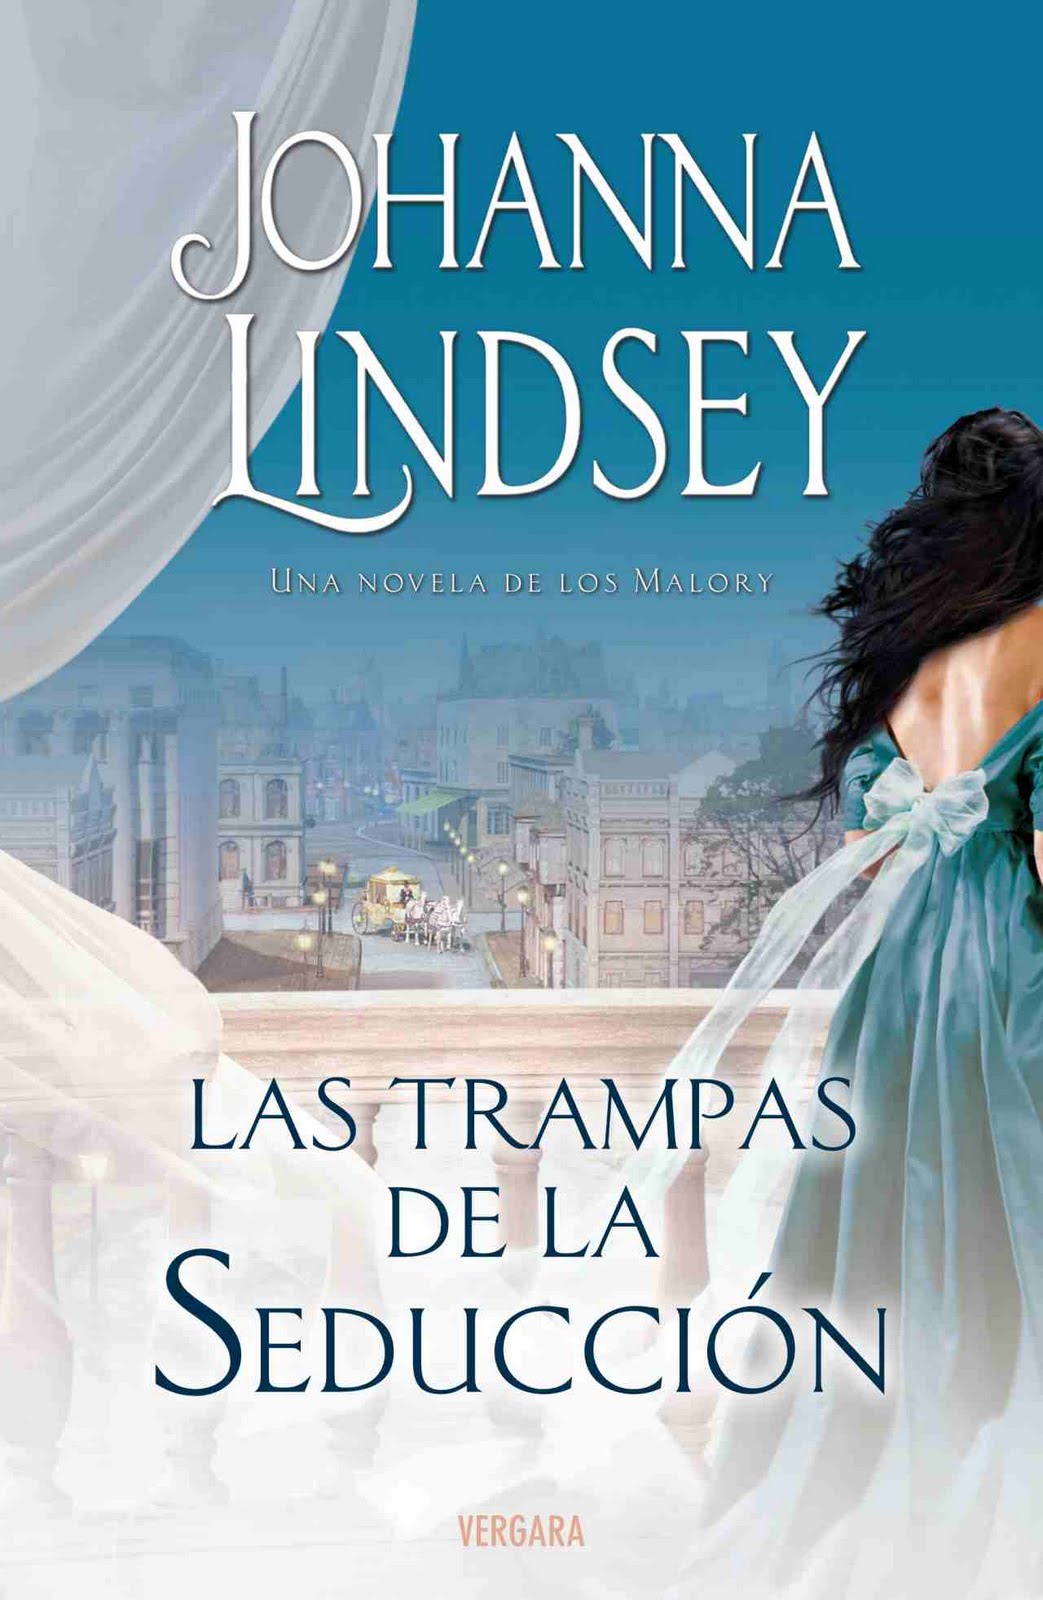 El Atico Del Romanticismo Saga Los Malory Johanna Lindsey